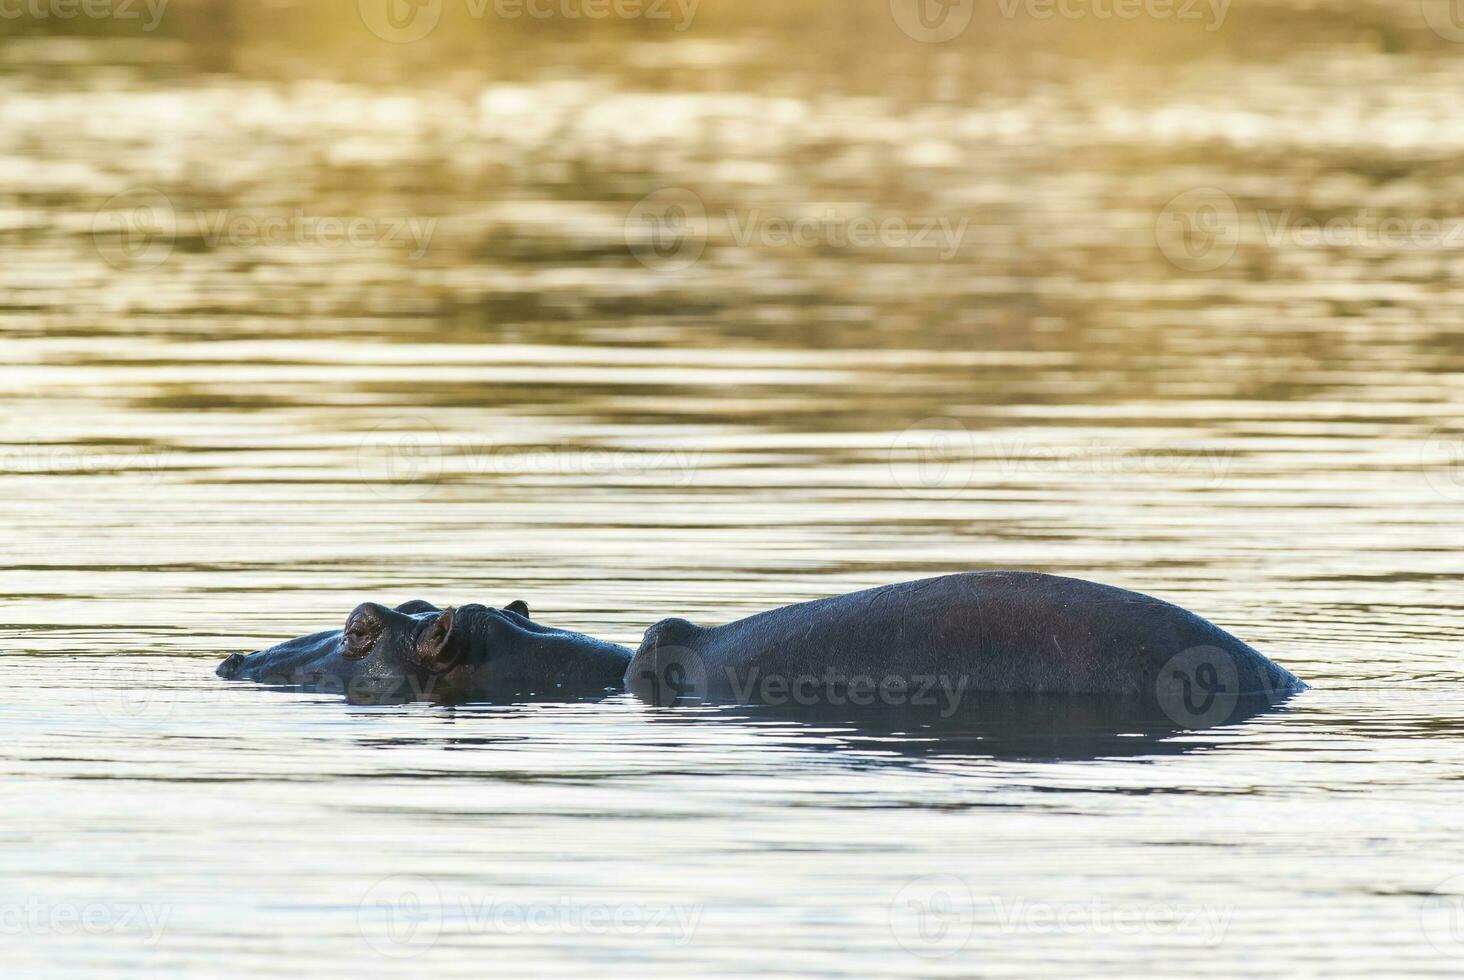 hipopótamo anfíbio dentro poço de água, Kruger nacional parque, sul África foto